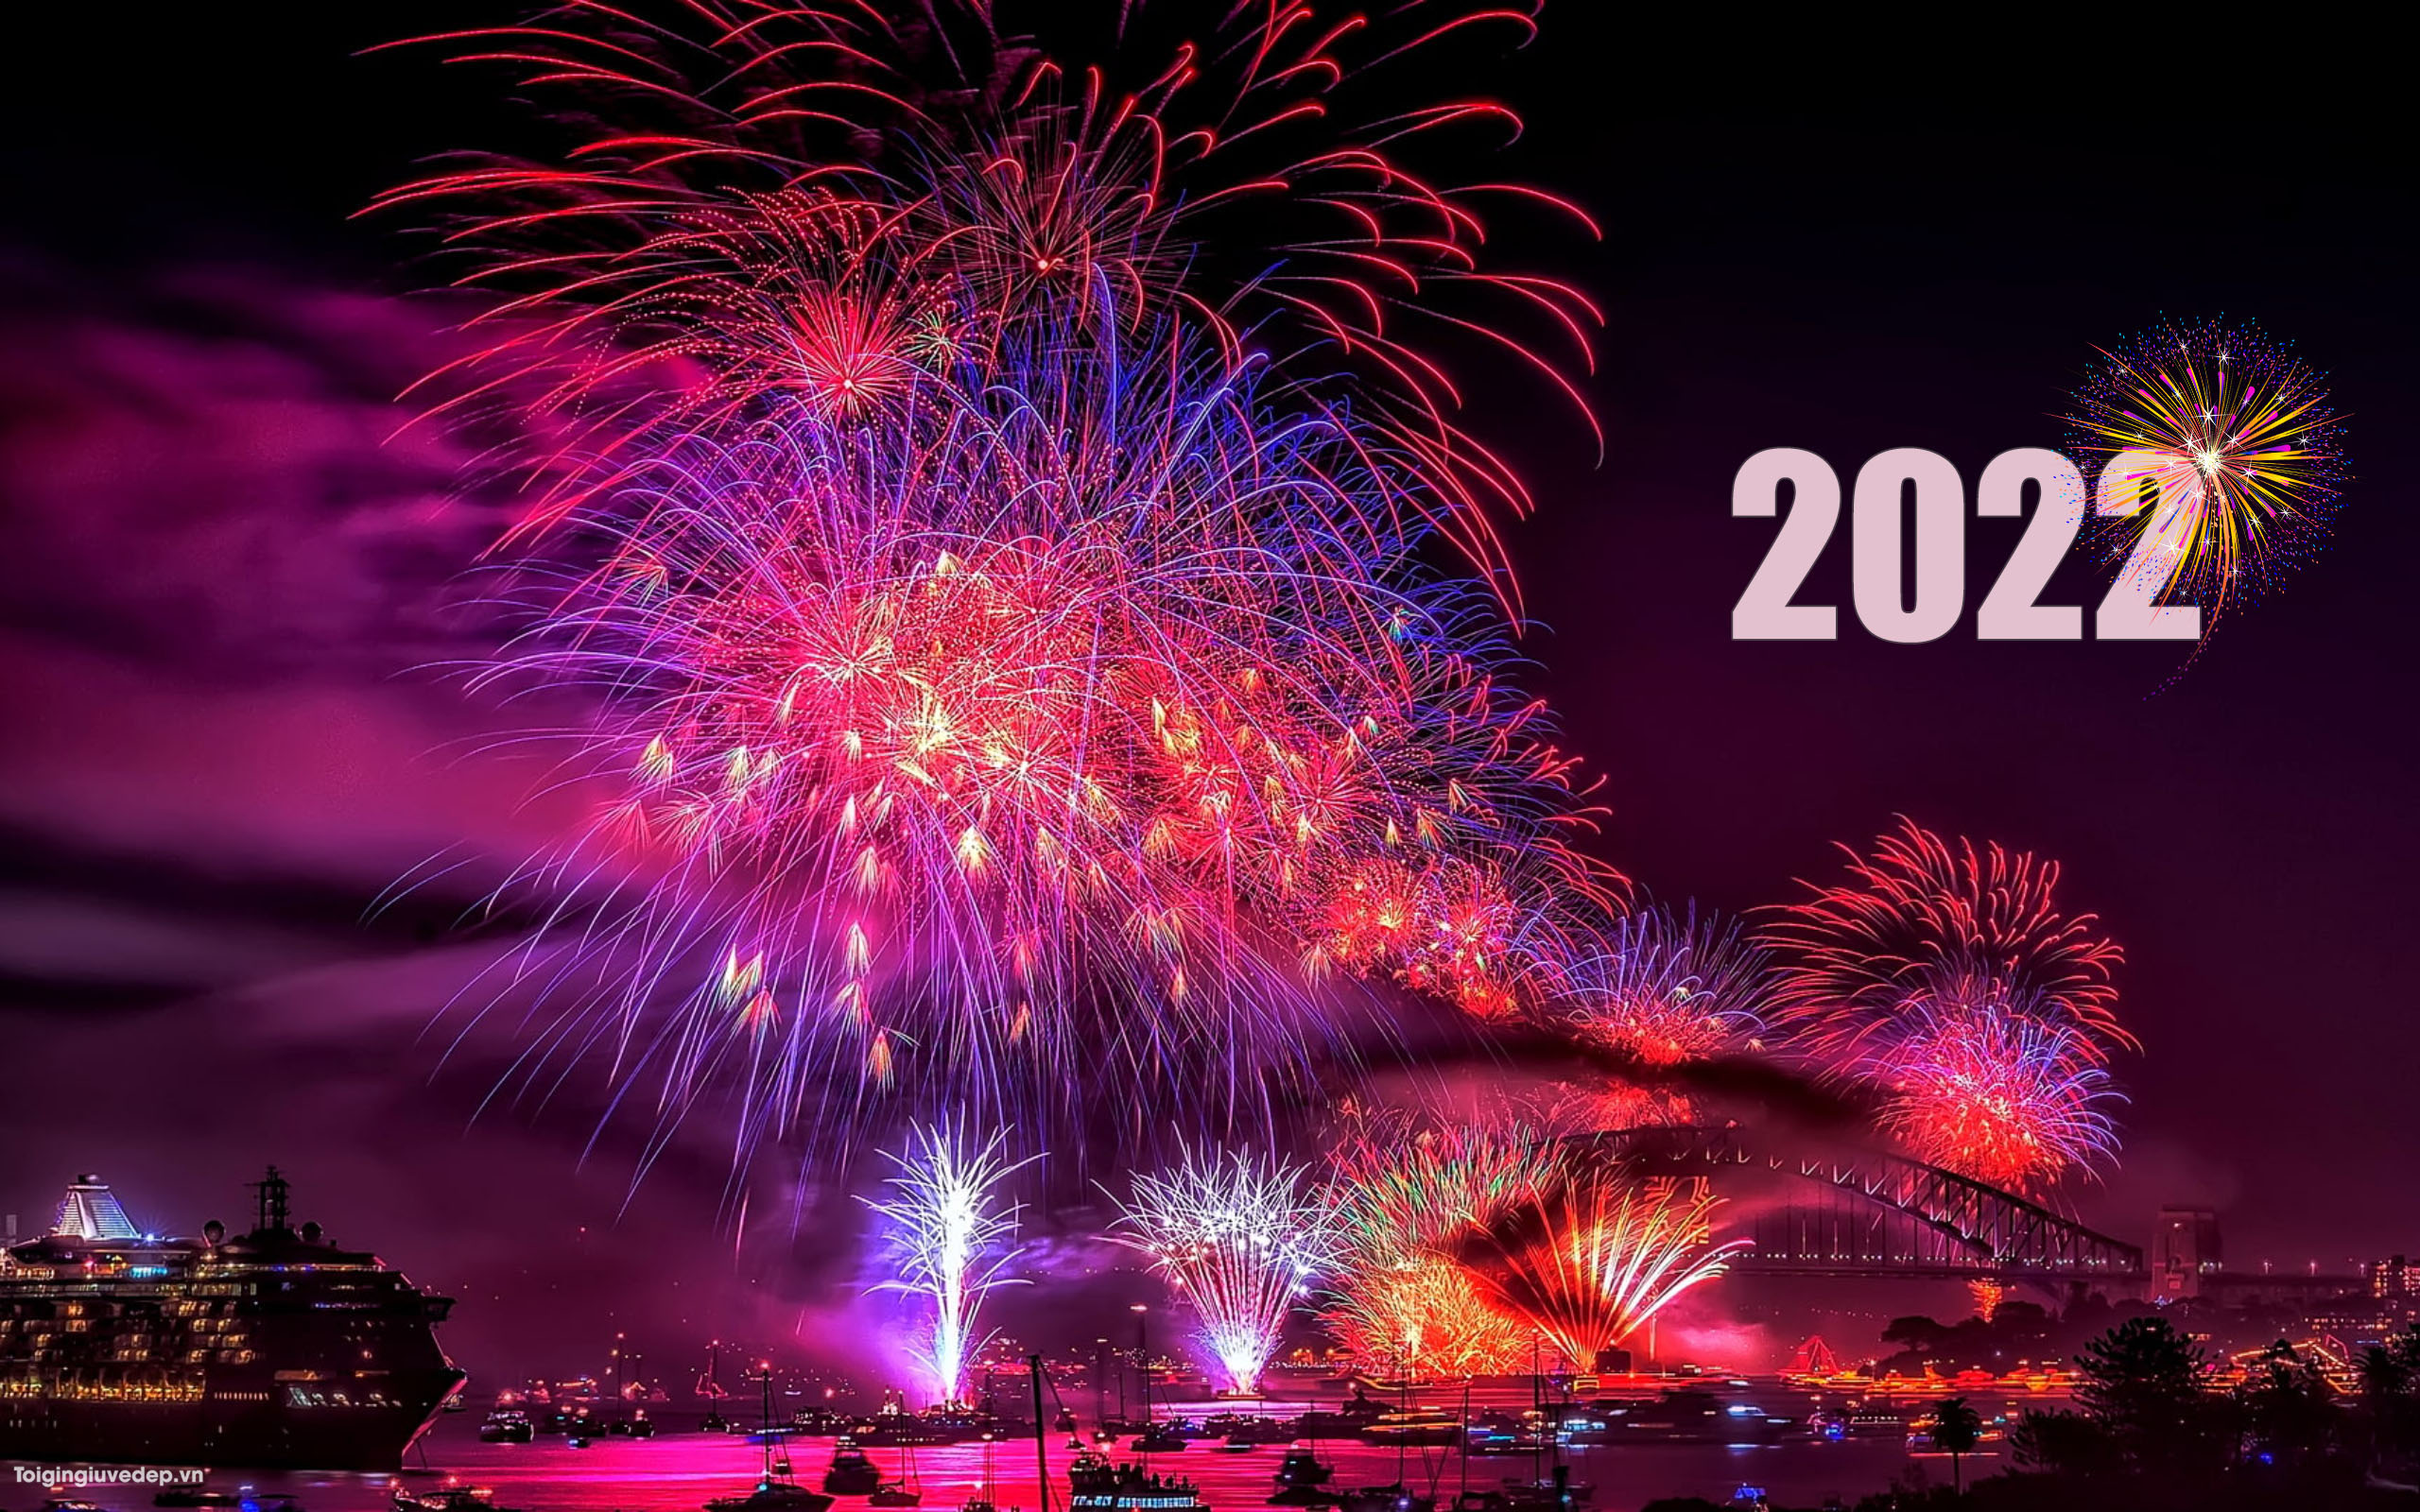 Hình Ảnh Pháo Hoa 2022 Đẹp, Rực Rỡ Nhất Chúc Mừng Năm Mới